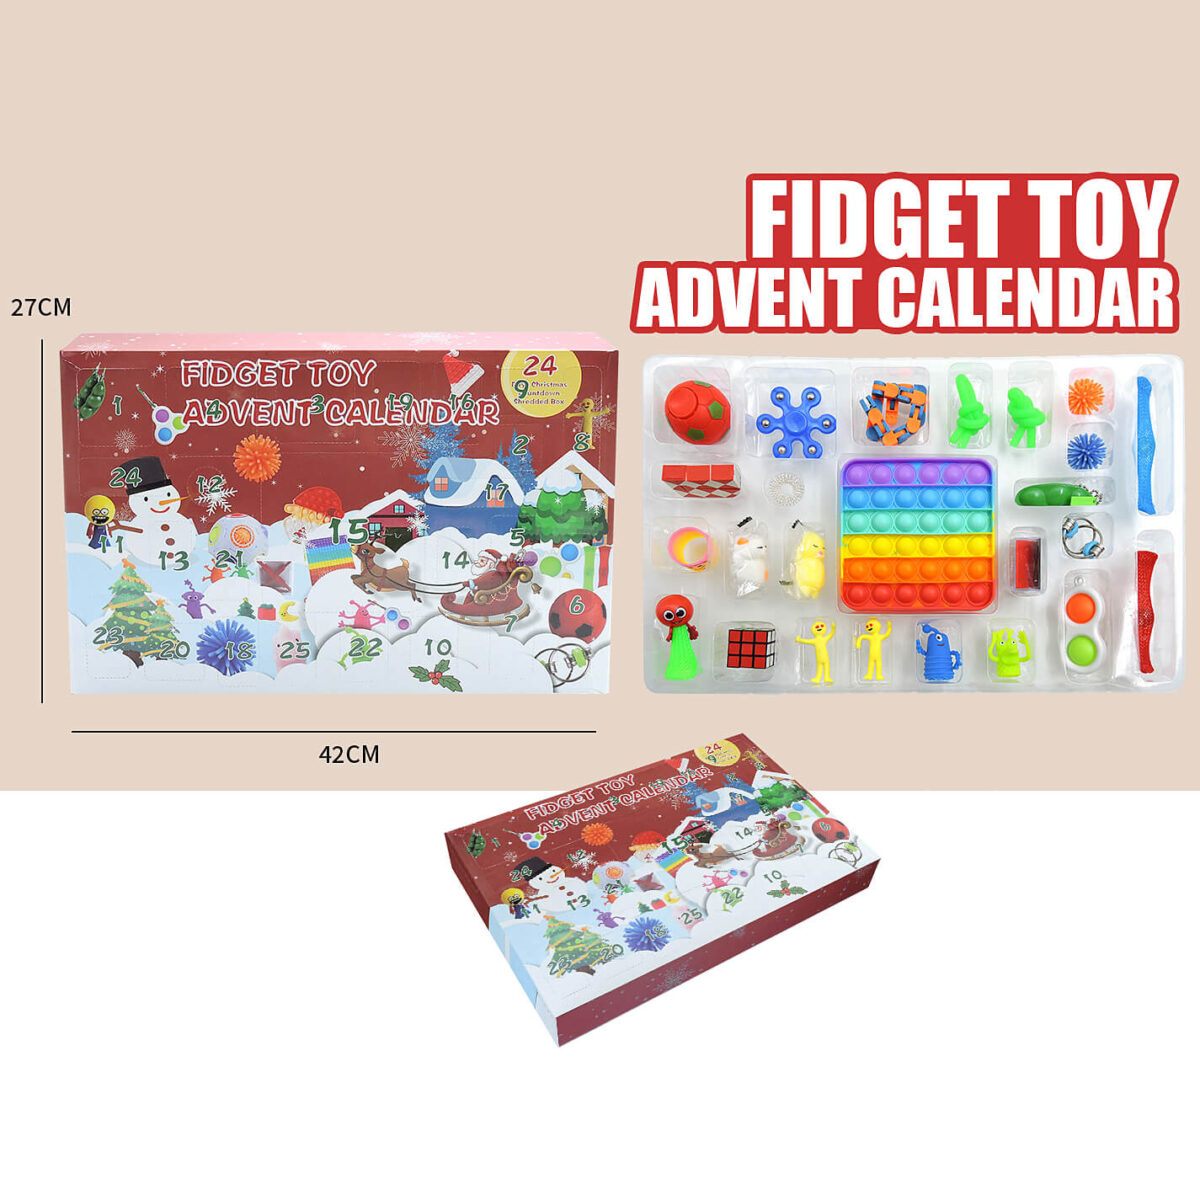 Wholesale fidget toy advent calendar 011S